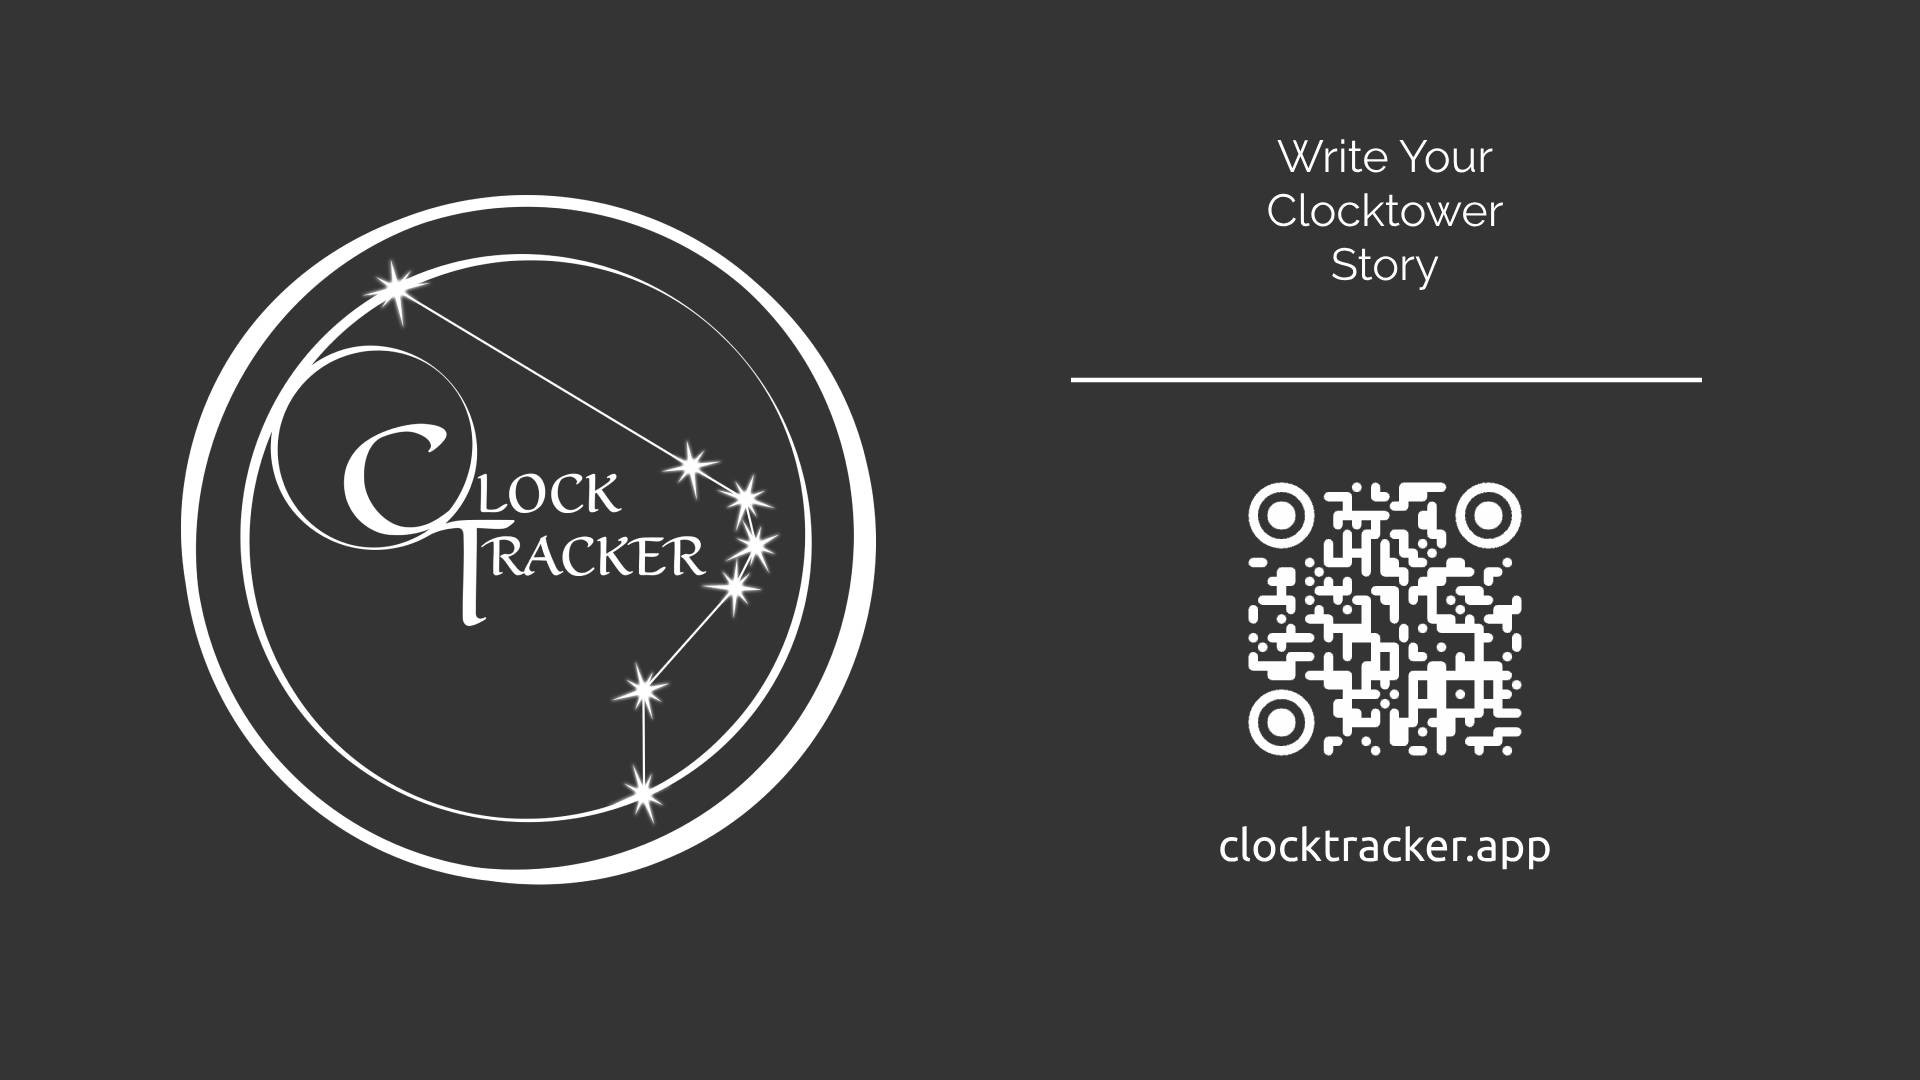 ClockTracker - Write your Clocktower story

https://clocktracker.app